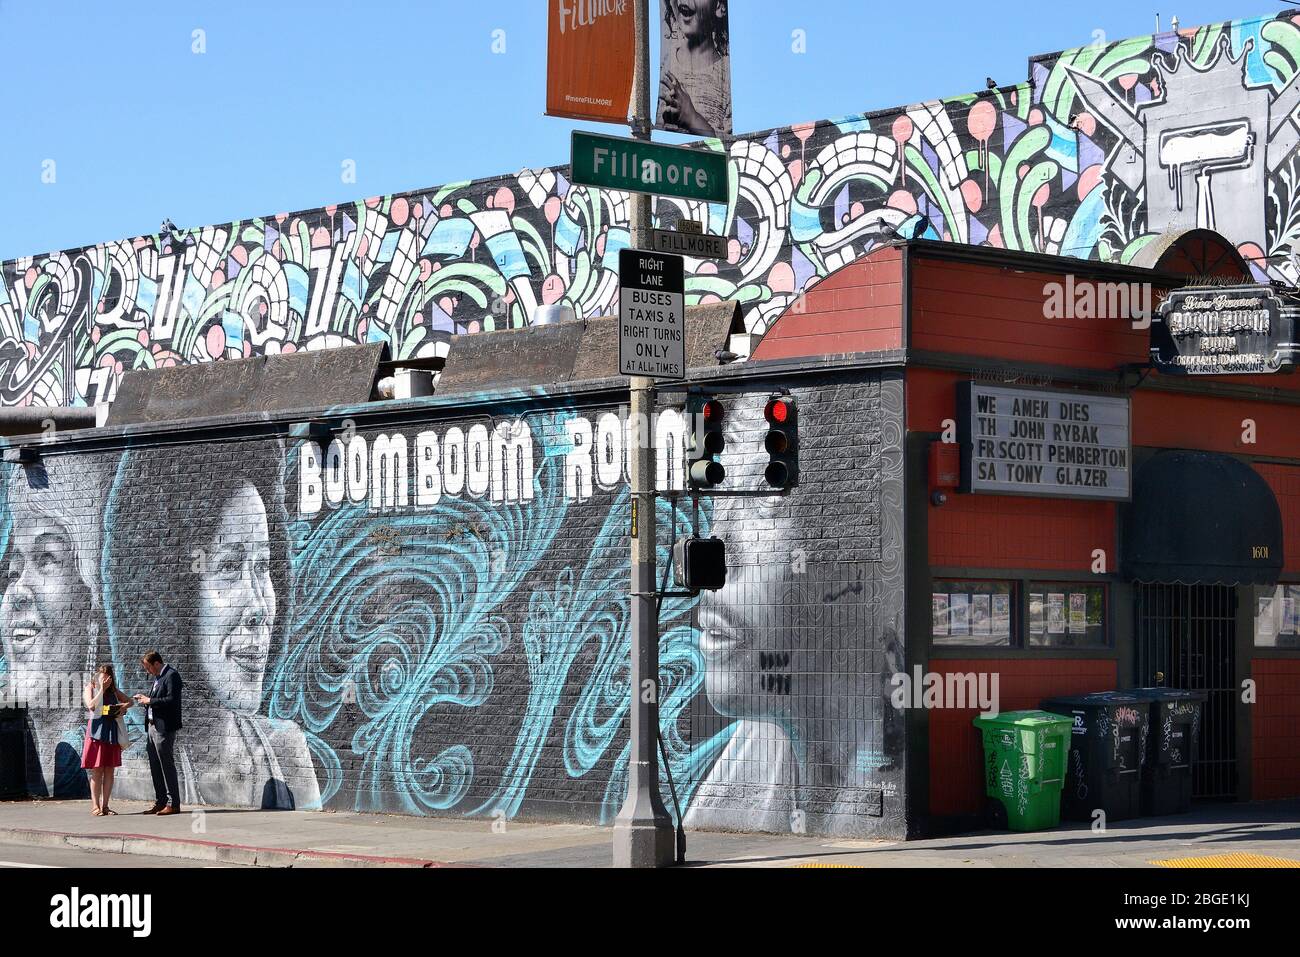 Passanten vor einem WandgemŠlde des Boom Boom Room im Stadtteil Fillmore, San Francisco, Kalifornien, USA Stock Photo